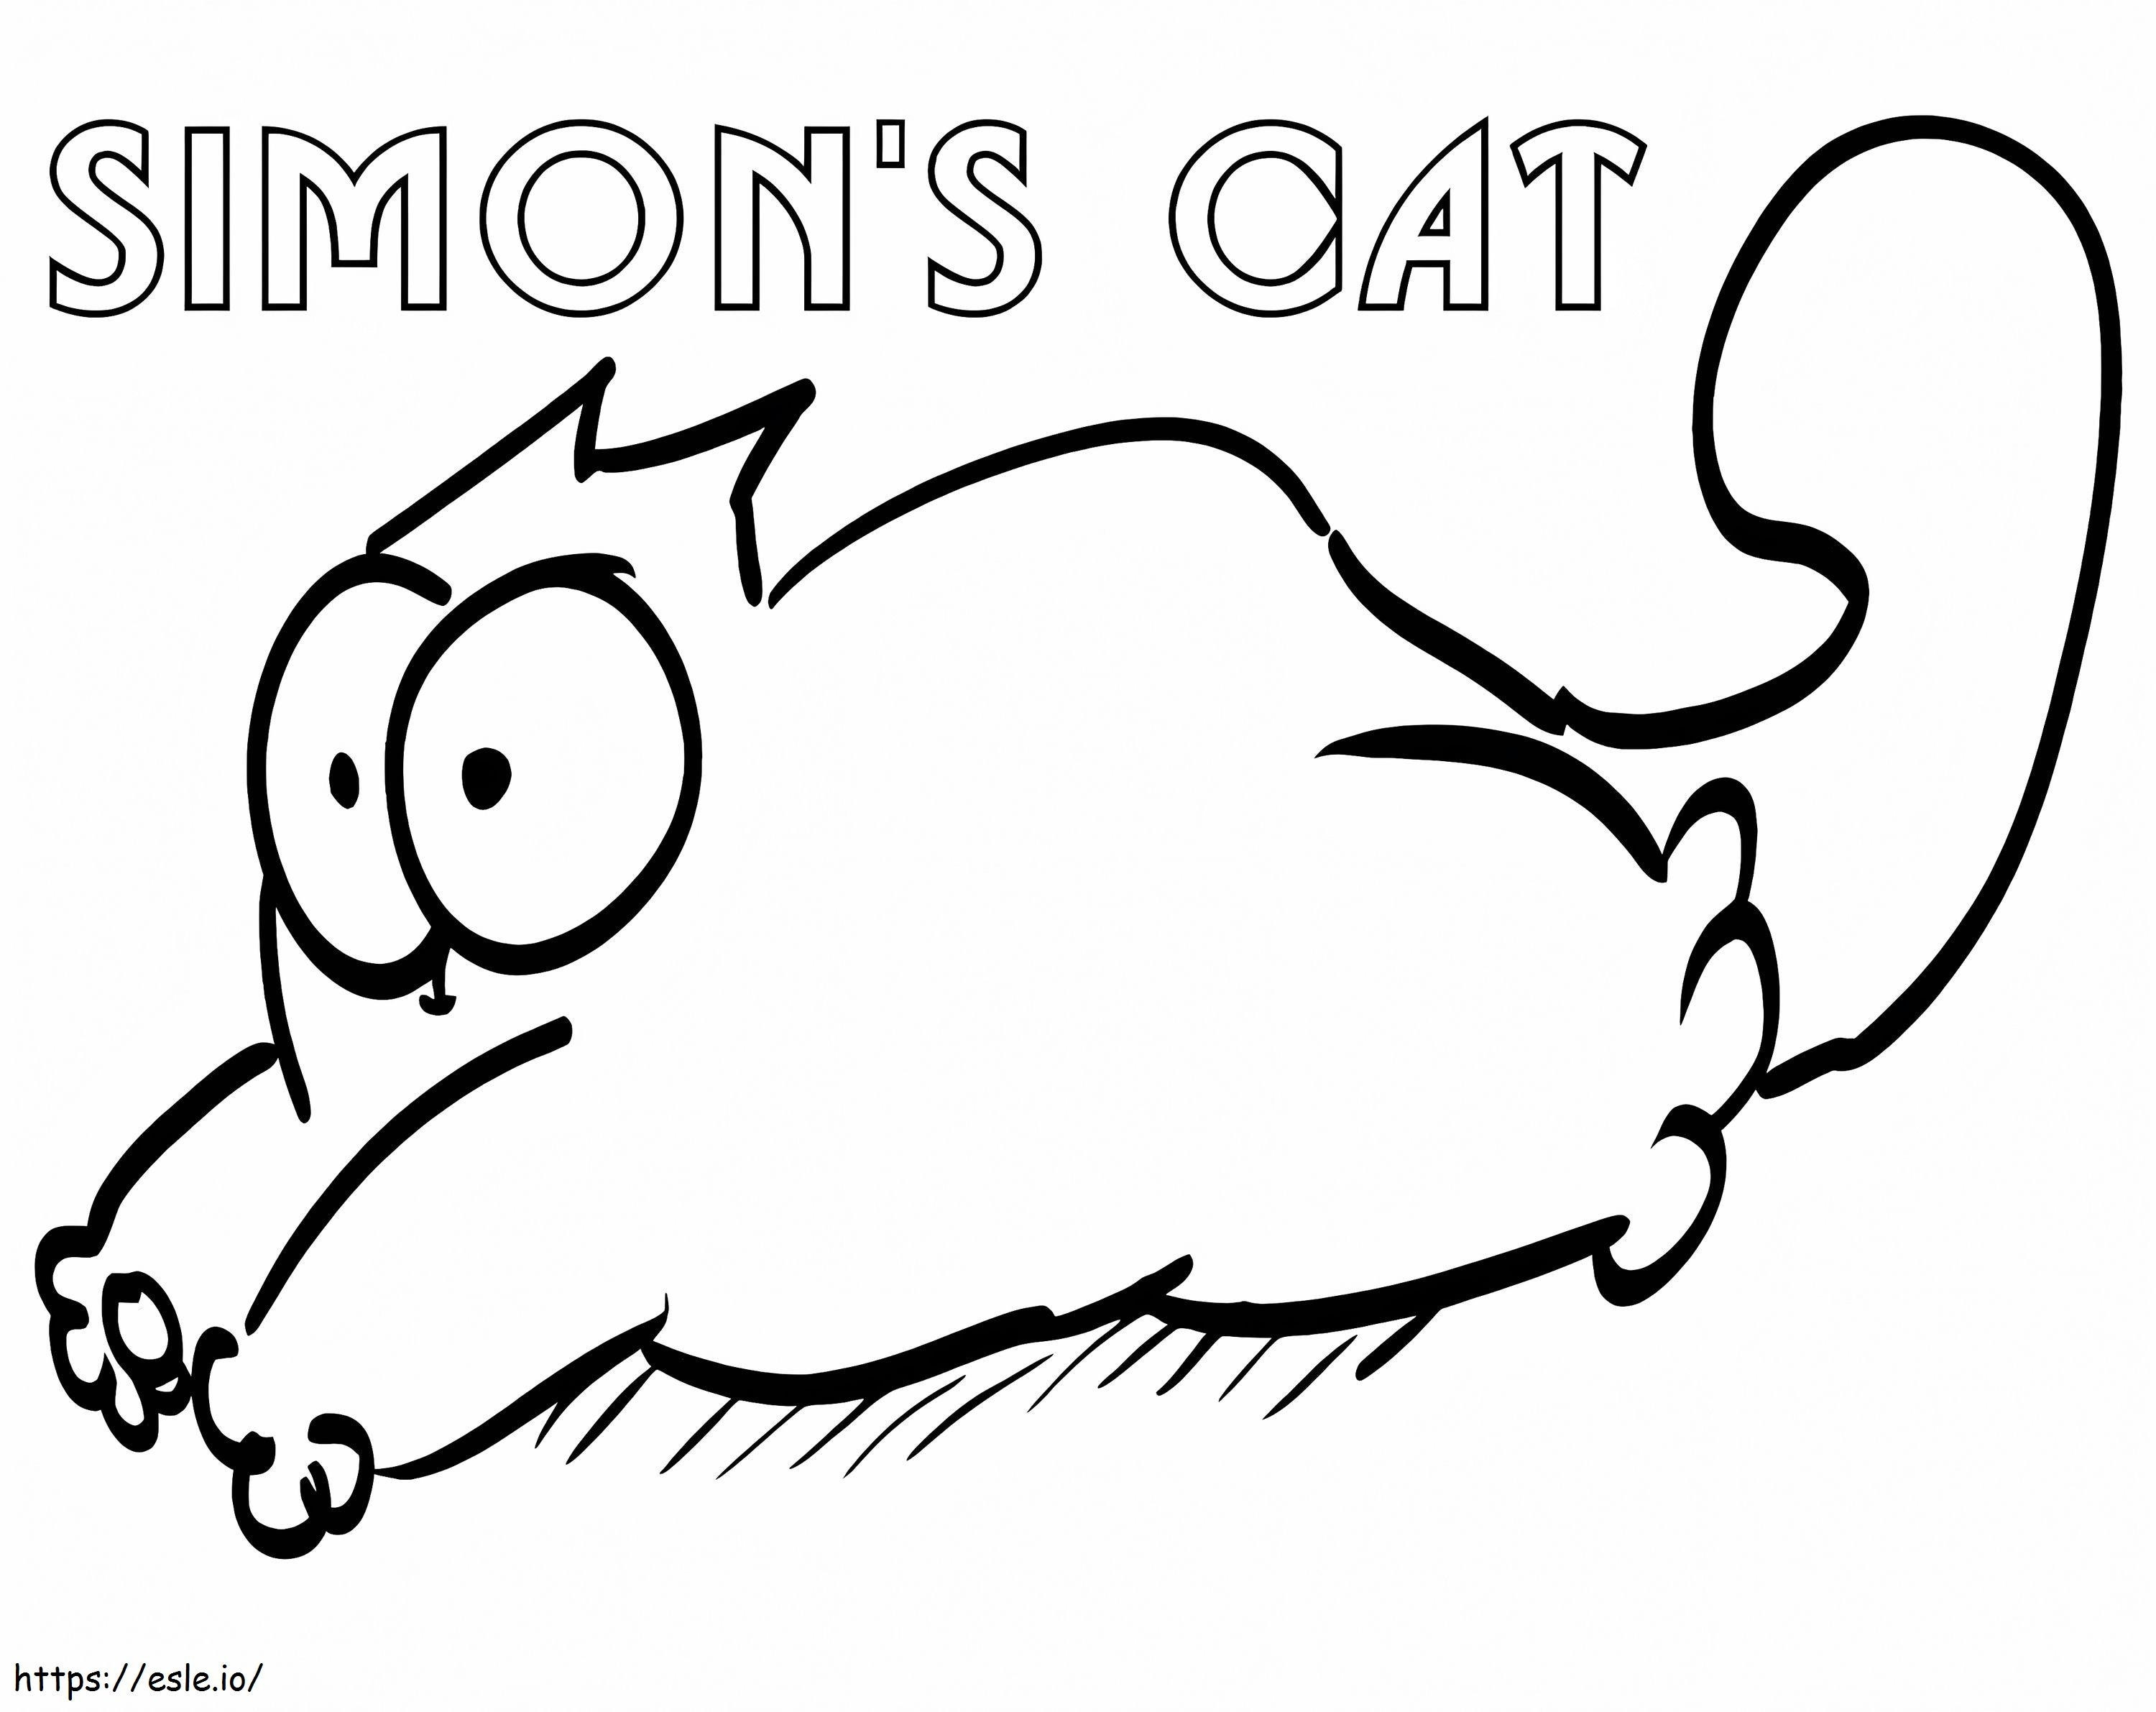 Simons Cat 2 de colorat